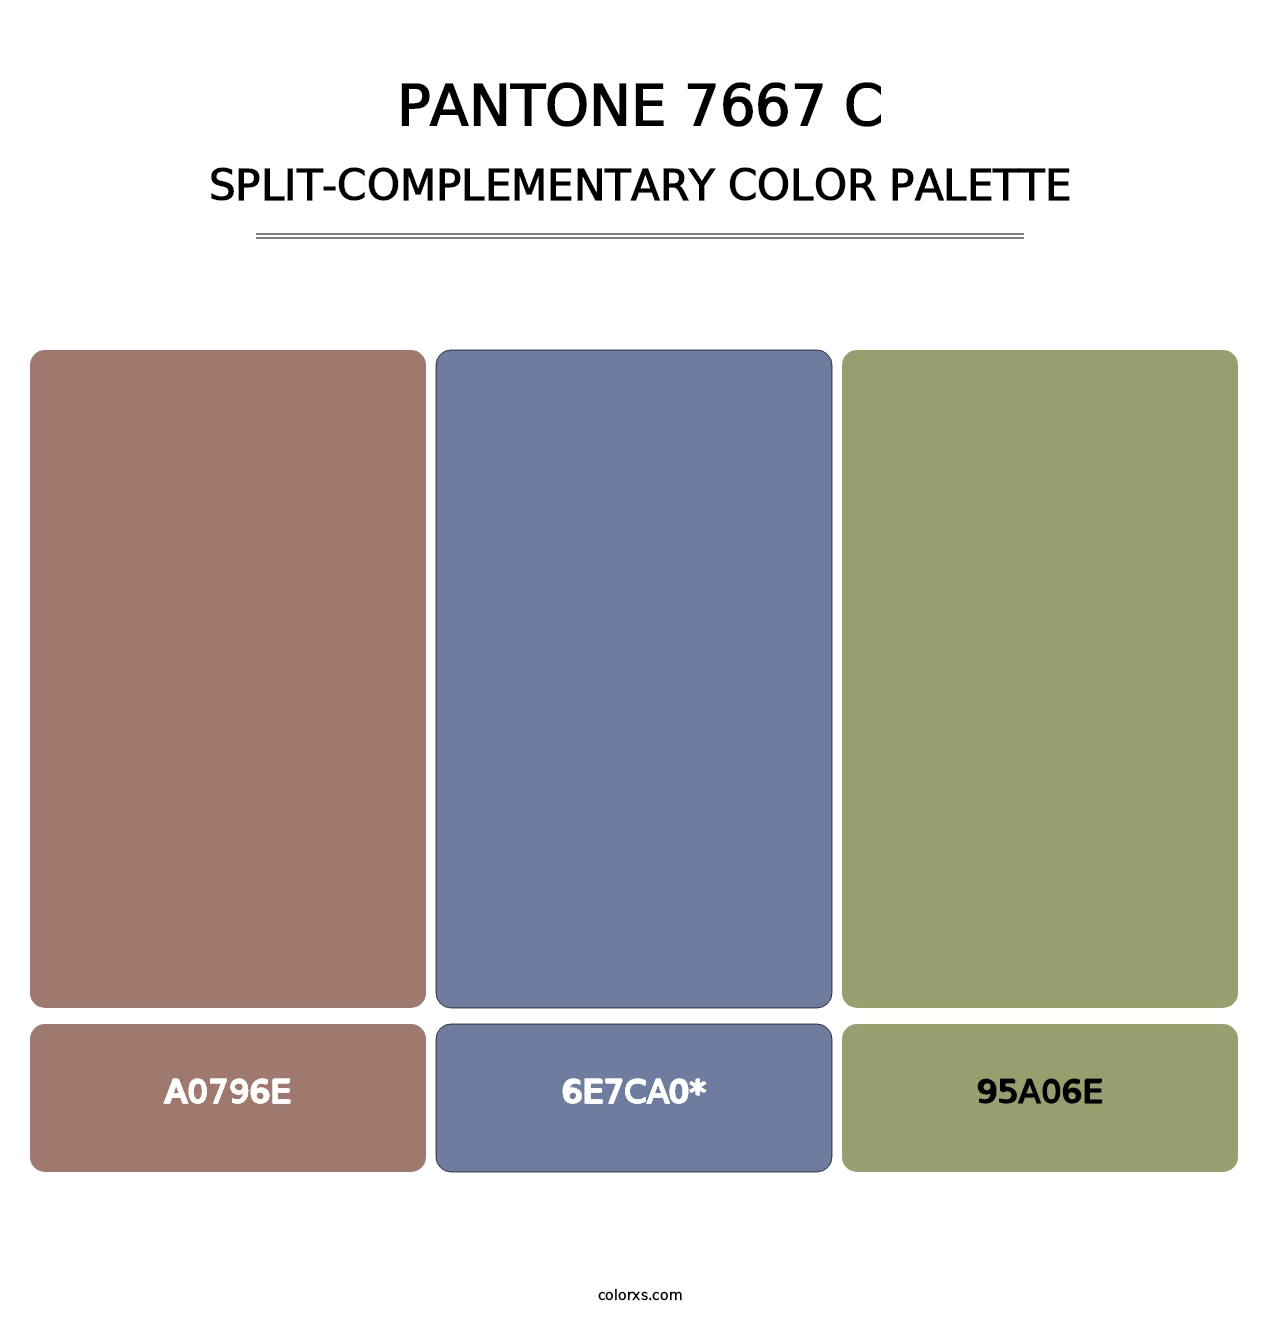 PANTONE 7667 C - Split-Complementary Color Palette